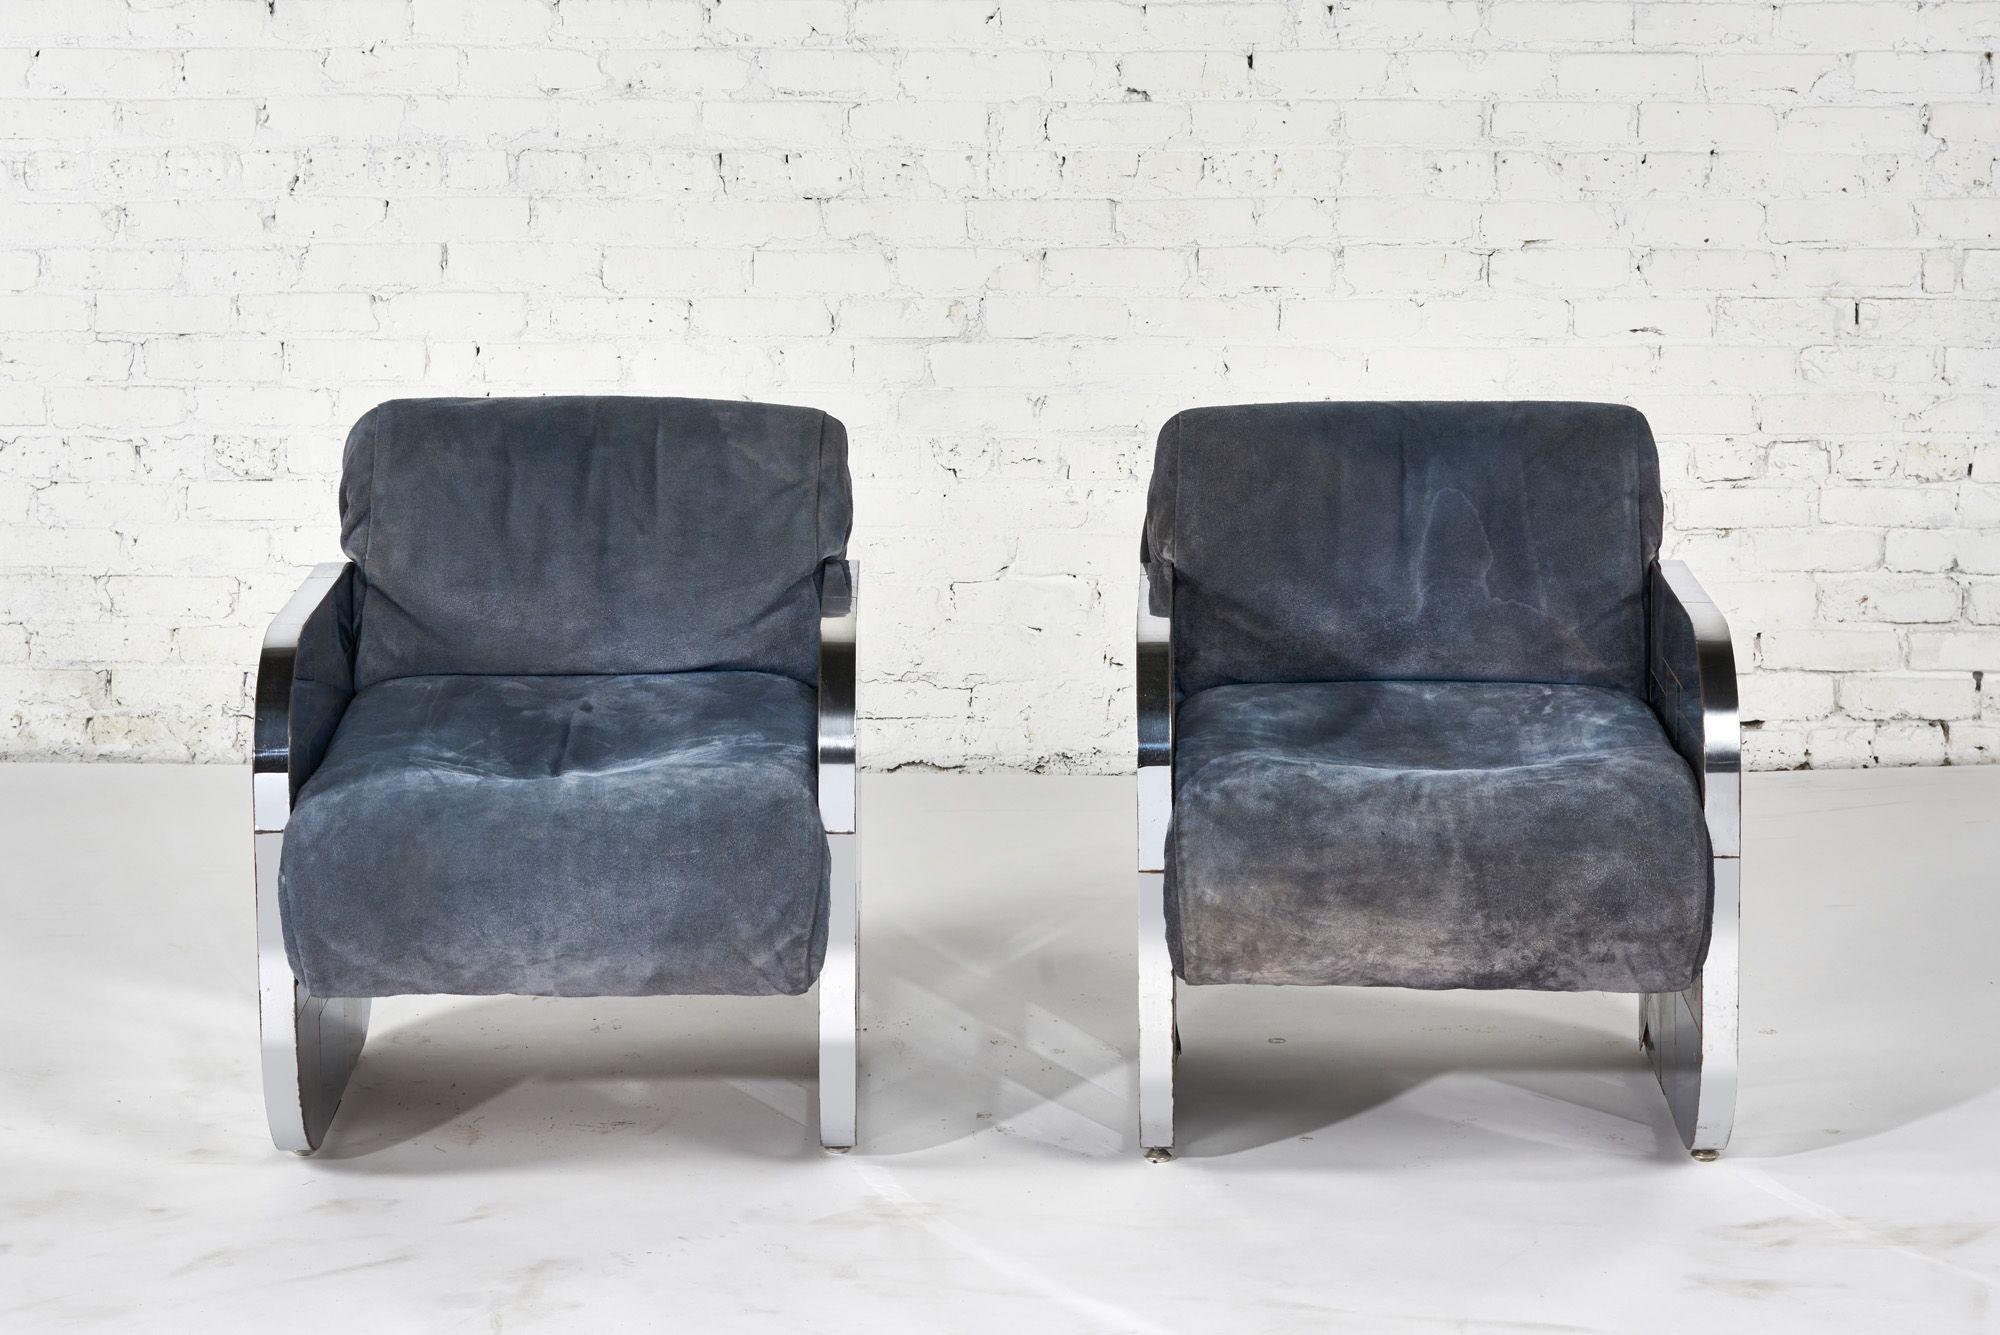 Ein seltenes Paar von Paul Evans Cityscape Patchwork Lounge Chairs, 1970.  Polsterung ist blau Wildleder alle original. Patchwork ist aus Stahlblechrahmen konstruiert  mit einem Kontrast aus poliertem Chrom.